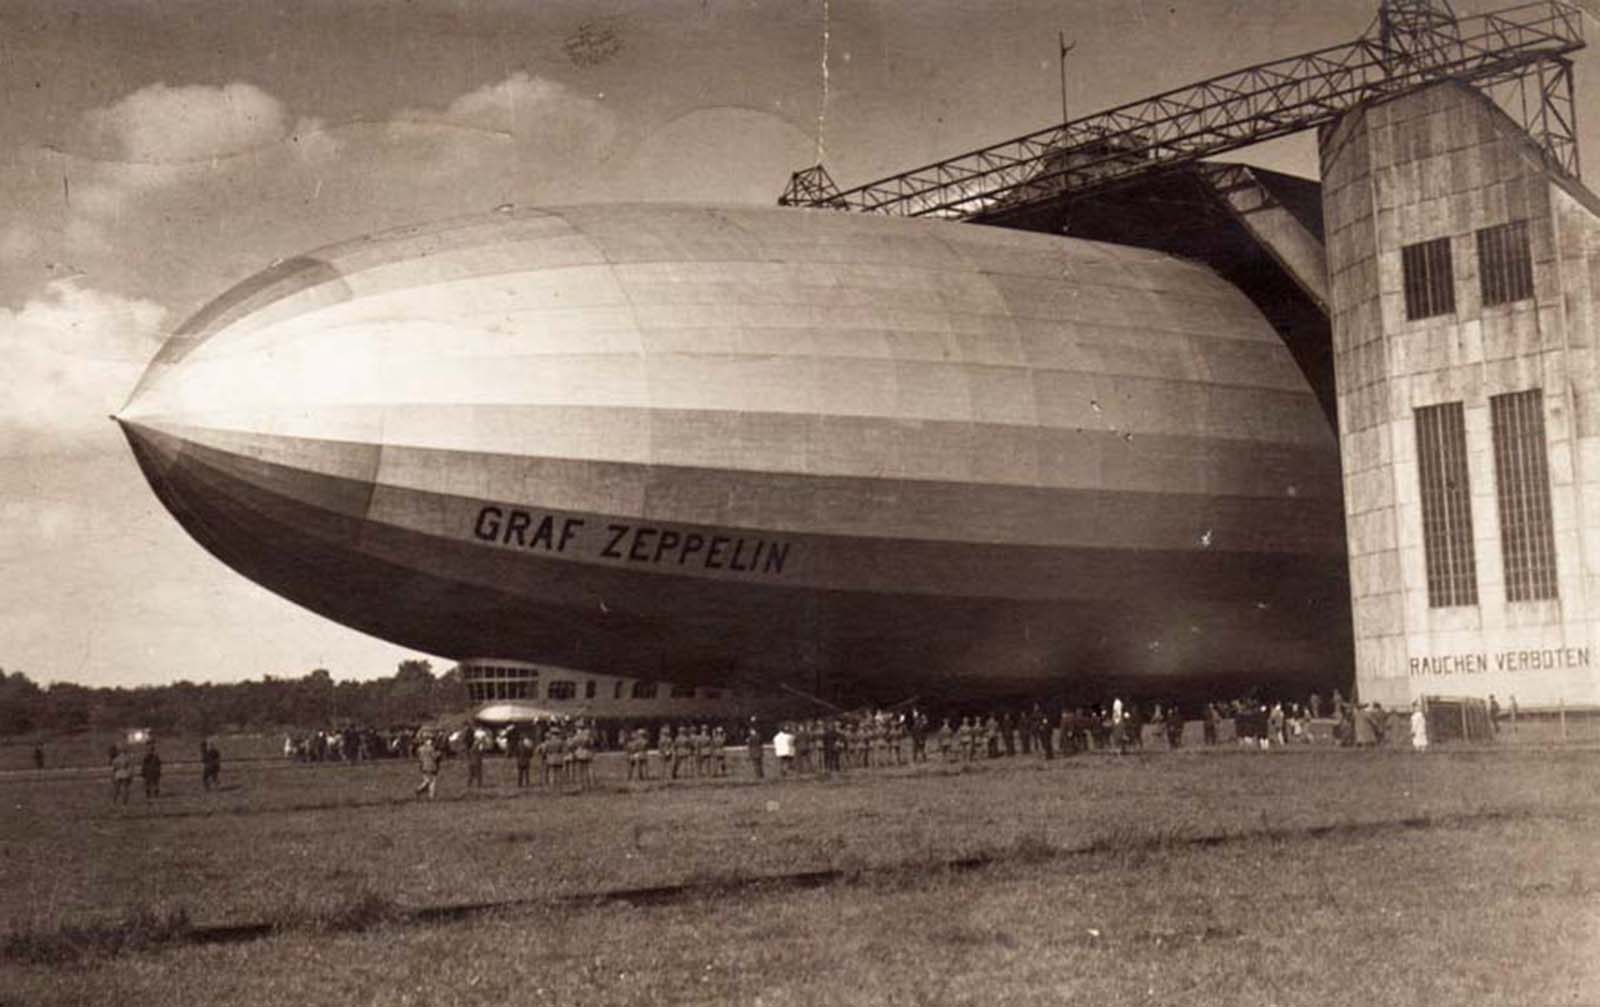 Airship Graf Zeppelin at its Friedrichshafen Hangar.